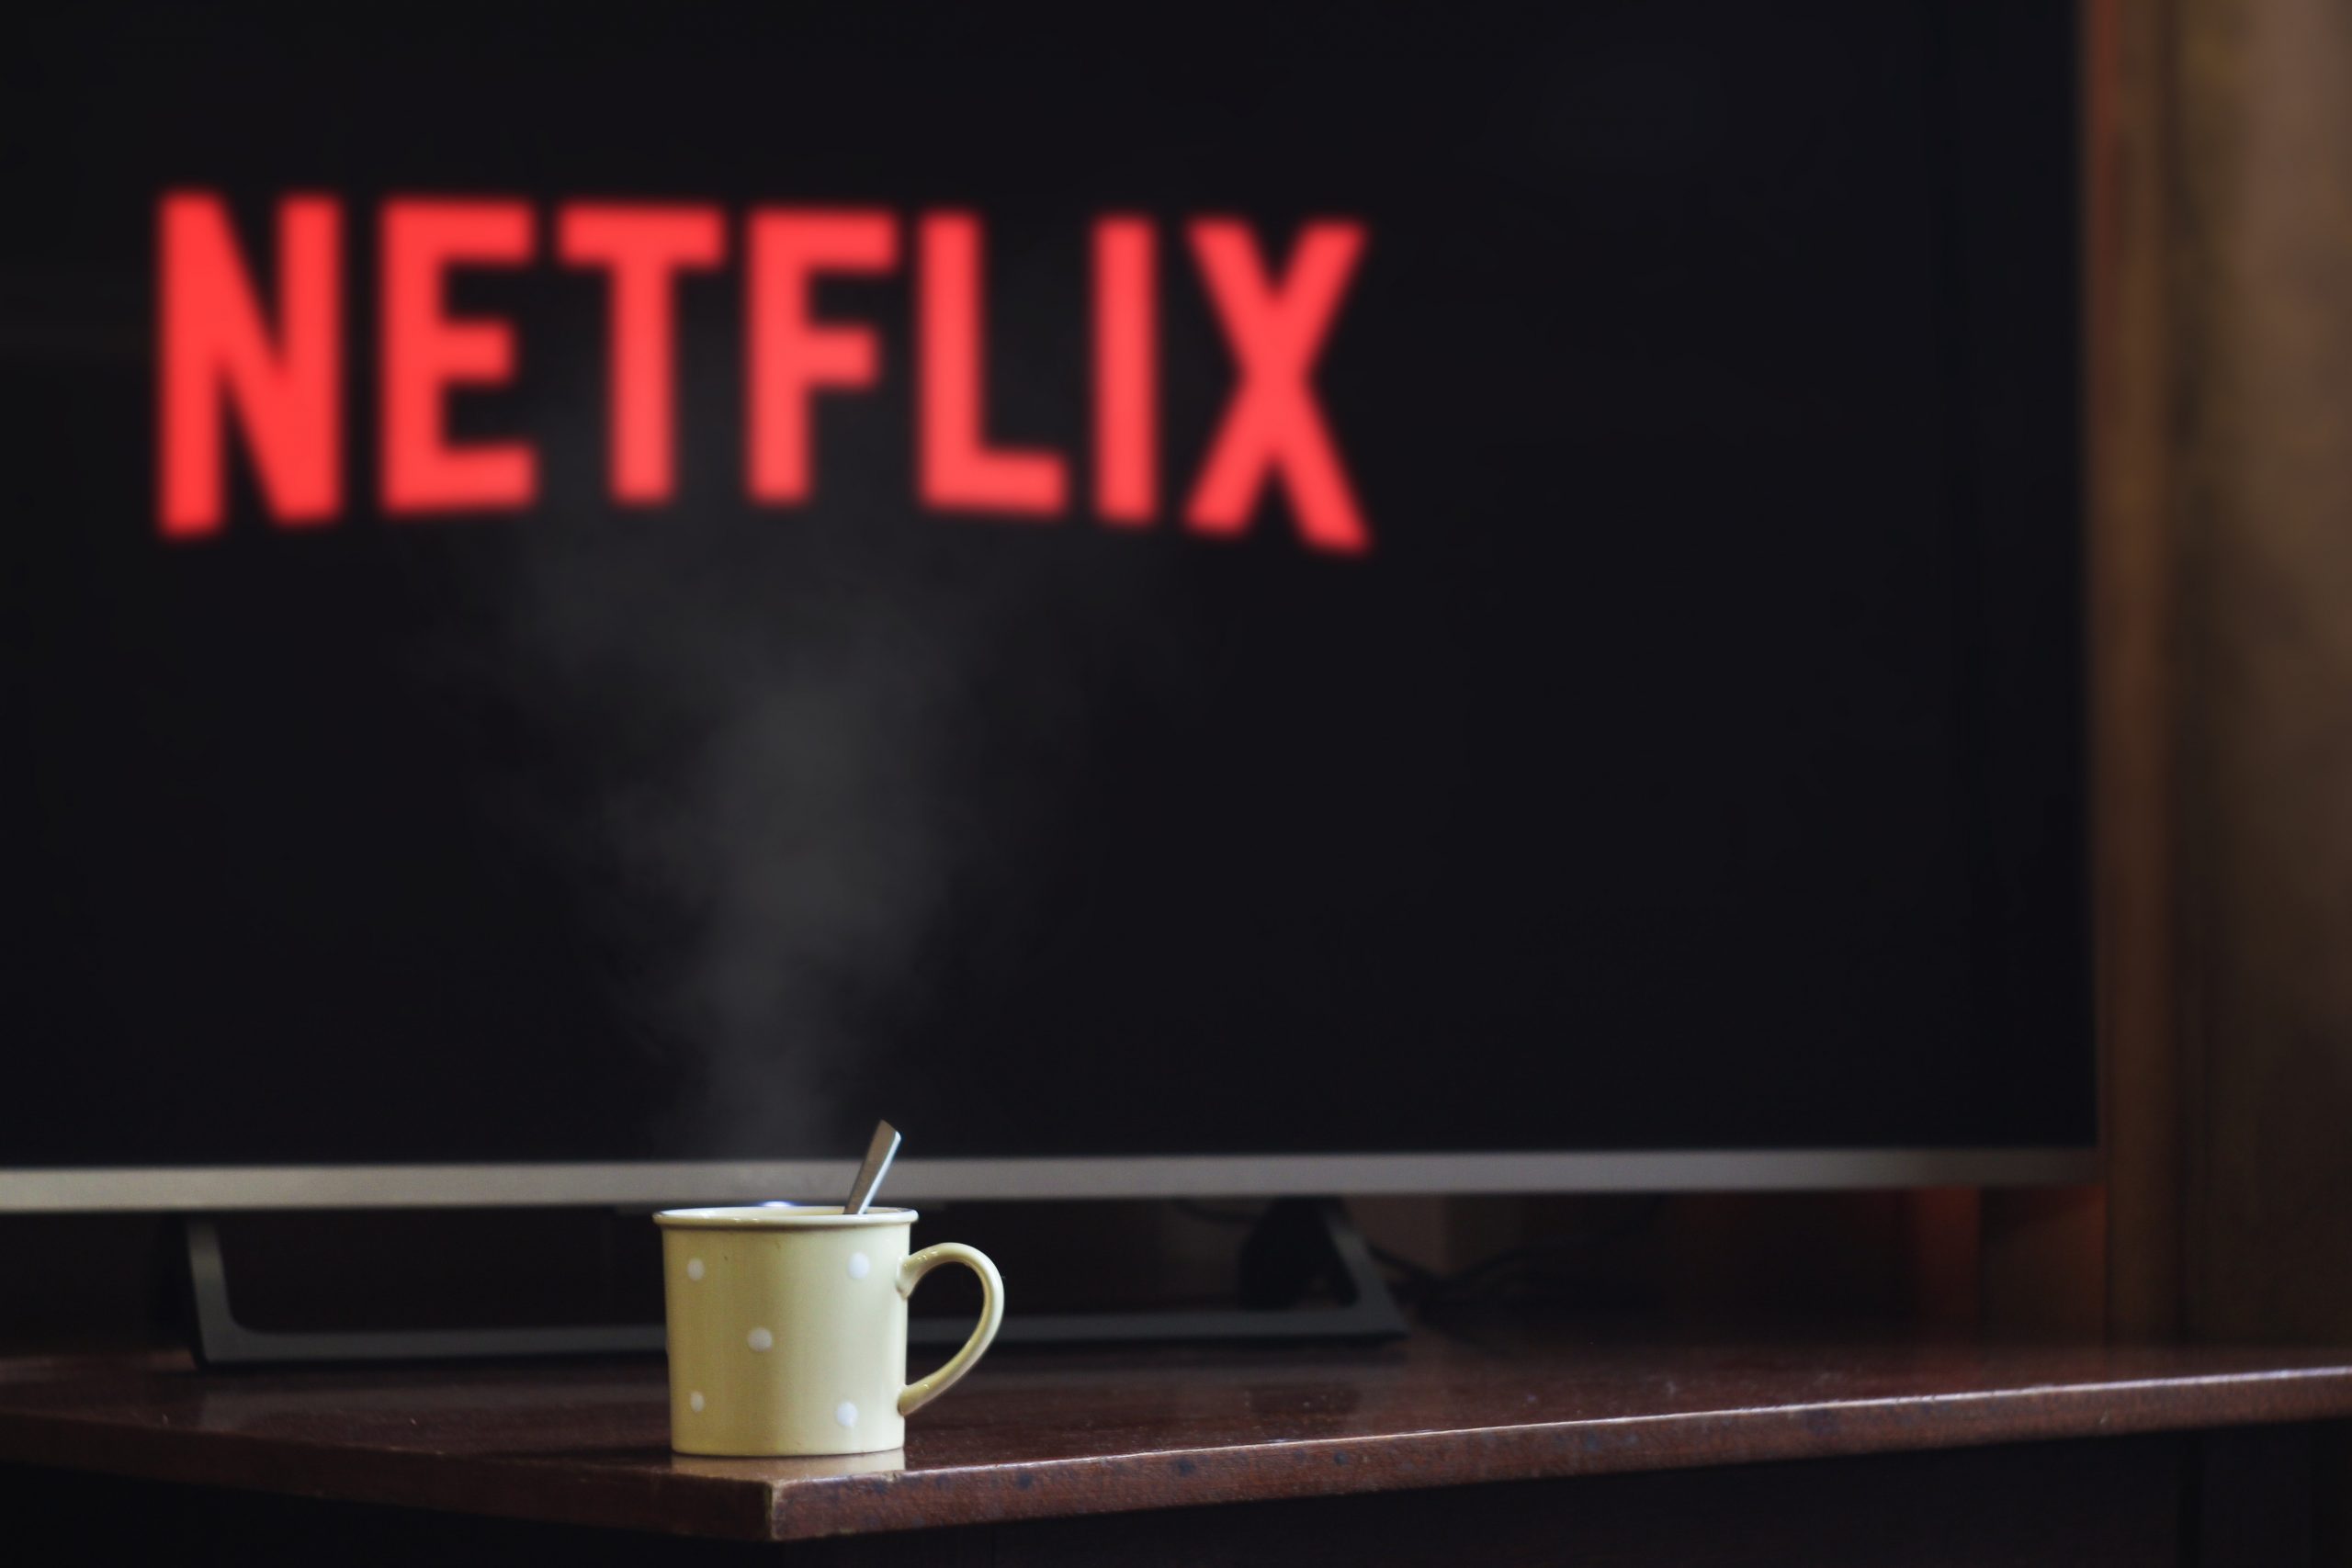  Le management chez Netflix (3) : faire rimer liberté avec responsabilité